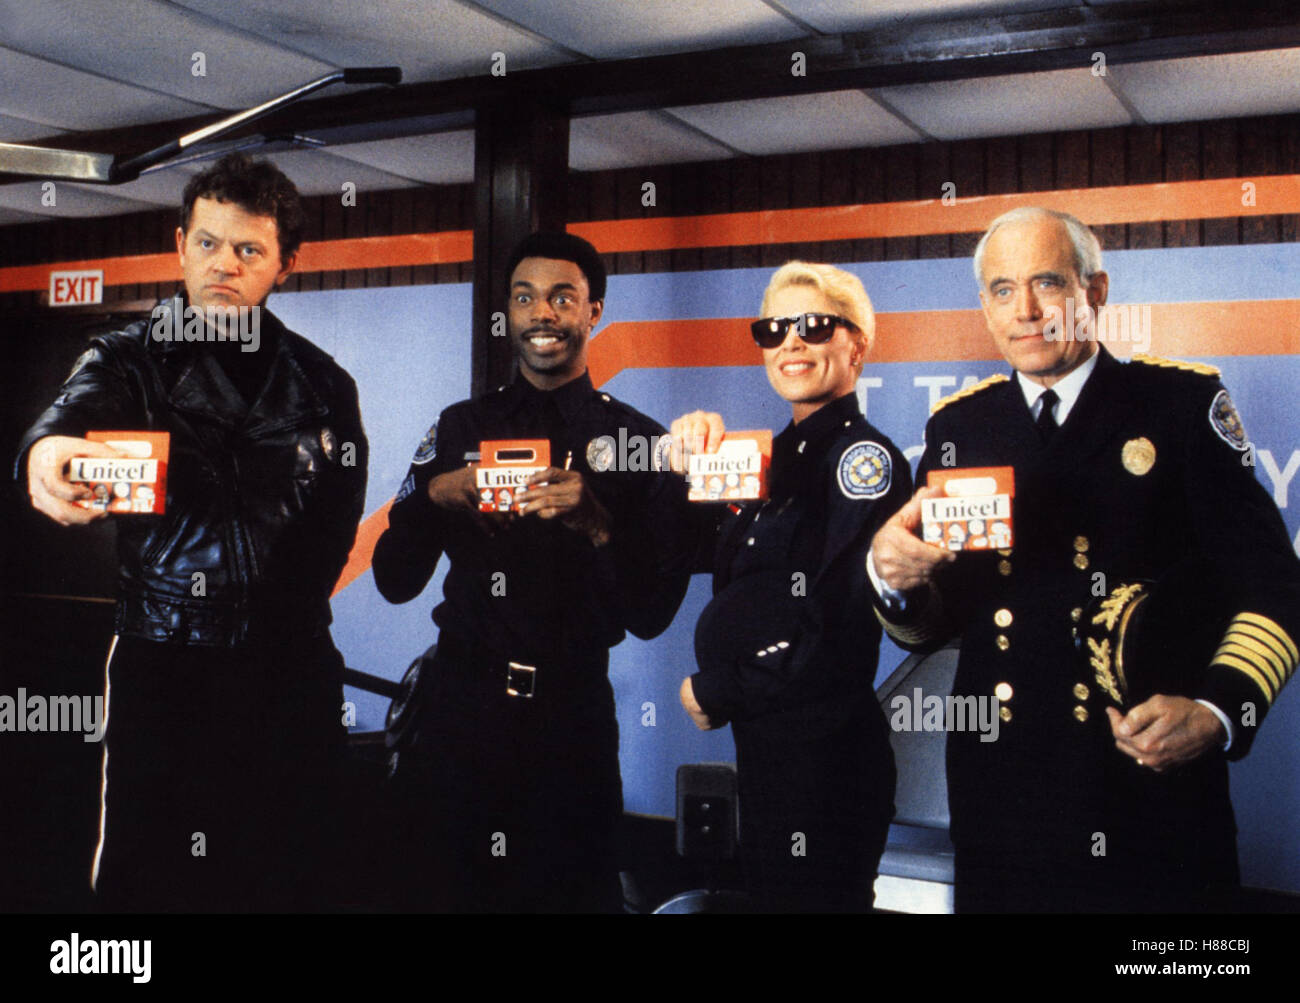 Police Academy 6 - Widerstand ist zwecklos, (POLICE ACADEMY 6: CITY UNDER SIEGE) USA 1989, Regie: Peter Bonerz, DAVID GRAF, MICHAEL WINSLOW, LESLIE EASTERBROOK, GEORGE R. ROBERTSON, Stichwort: Cop, Polizist Stock Photo